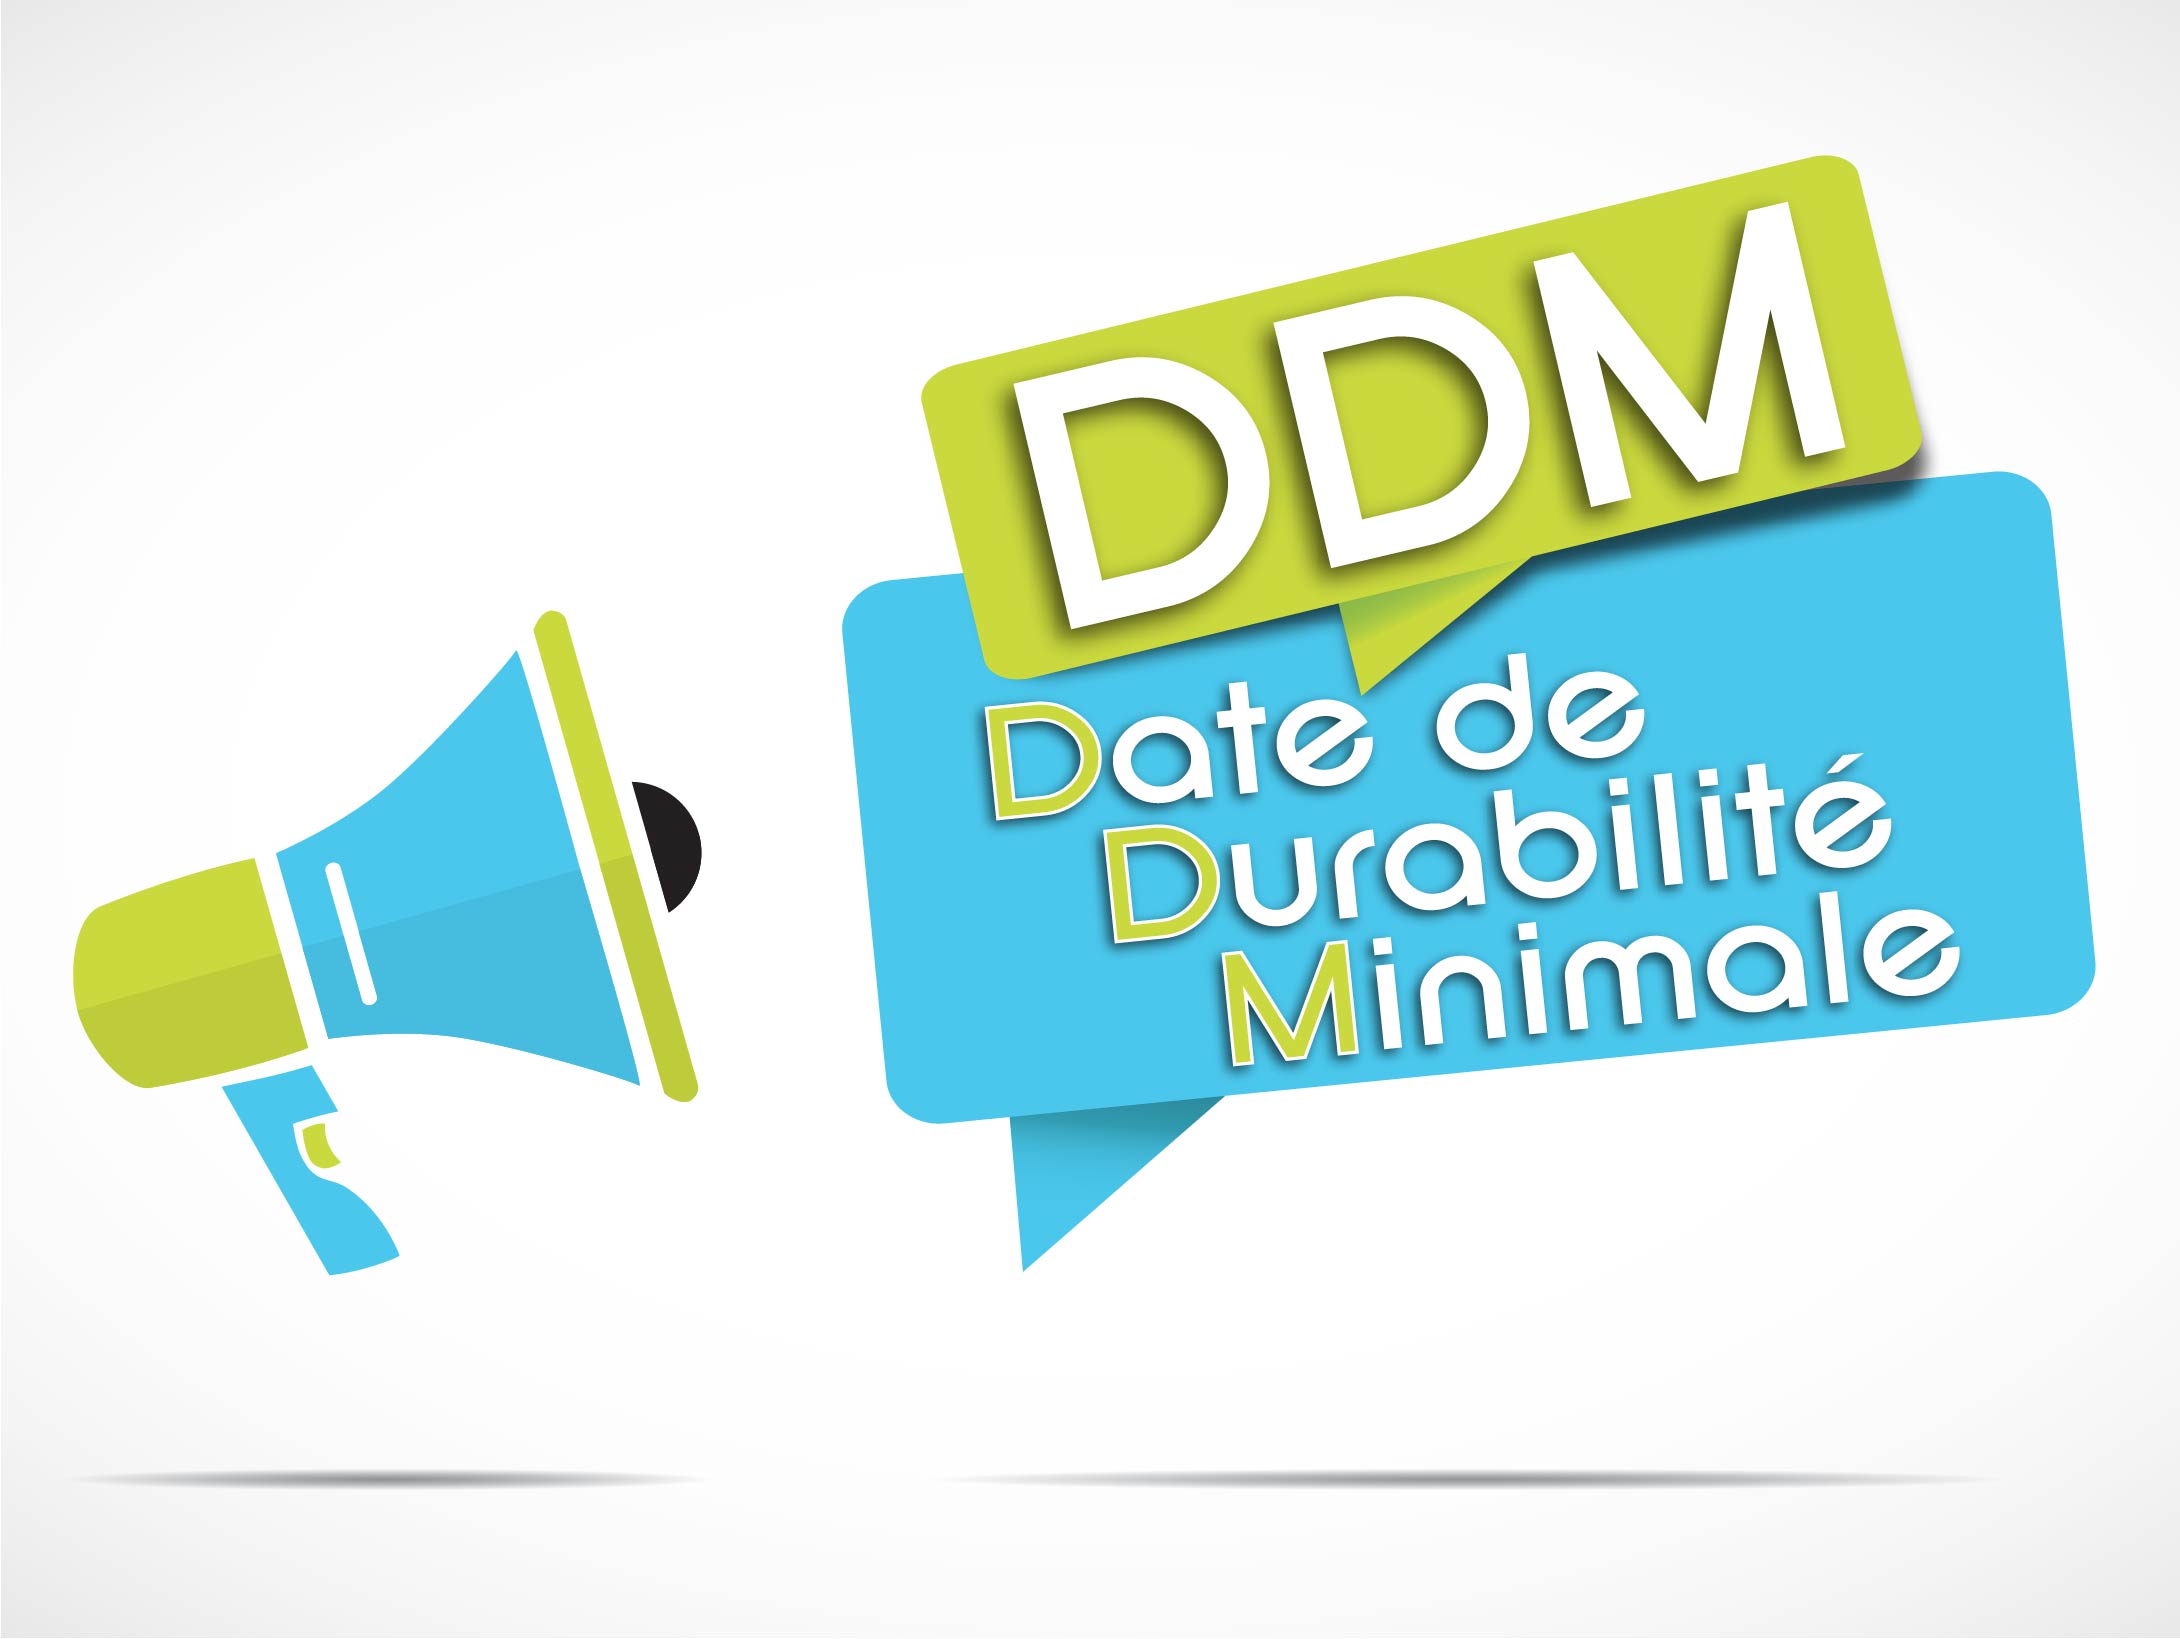 DDM- Date de durabilité minimale